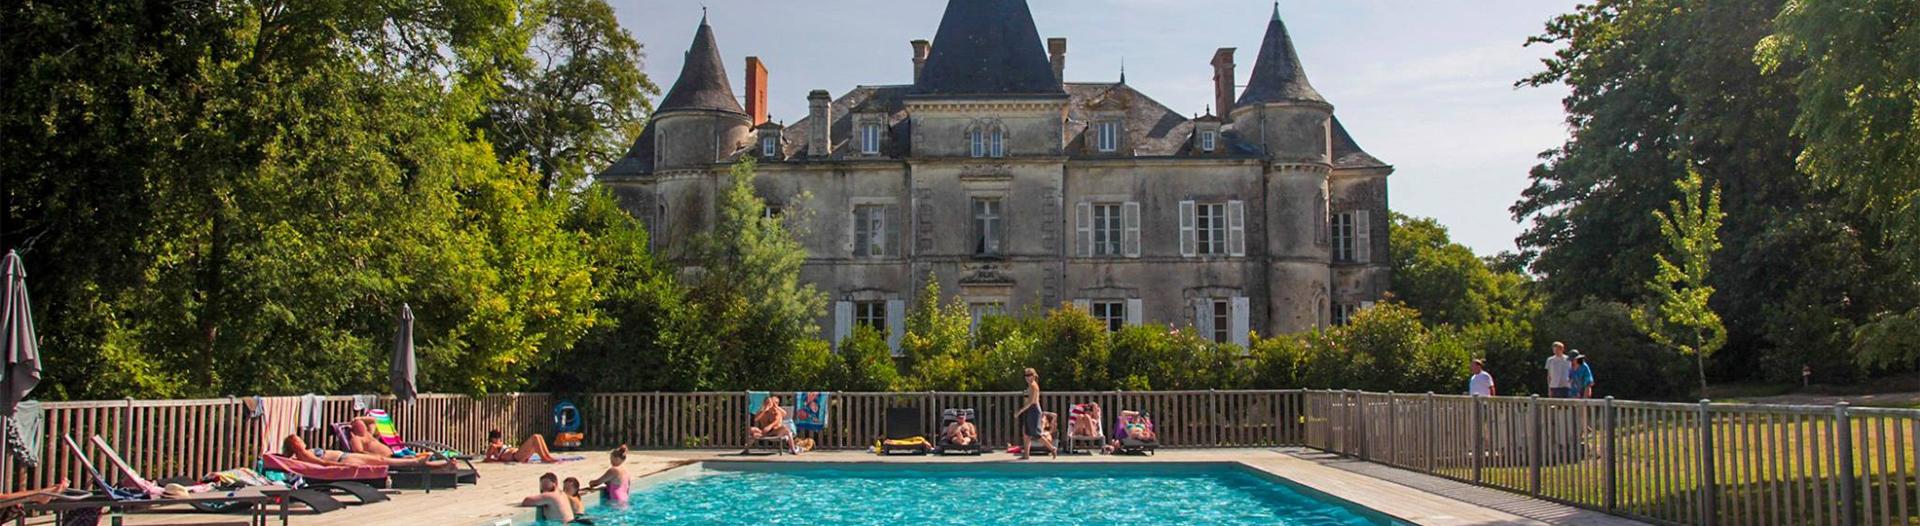 Château La Forêt piscine